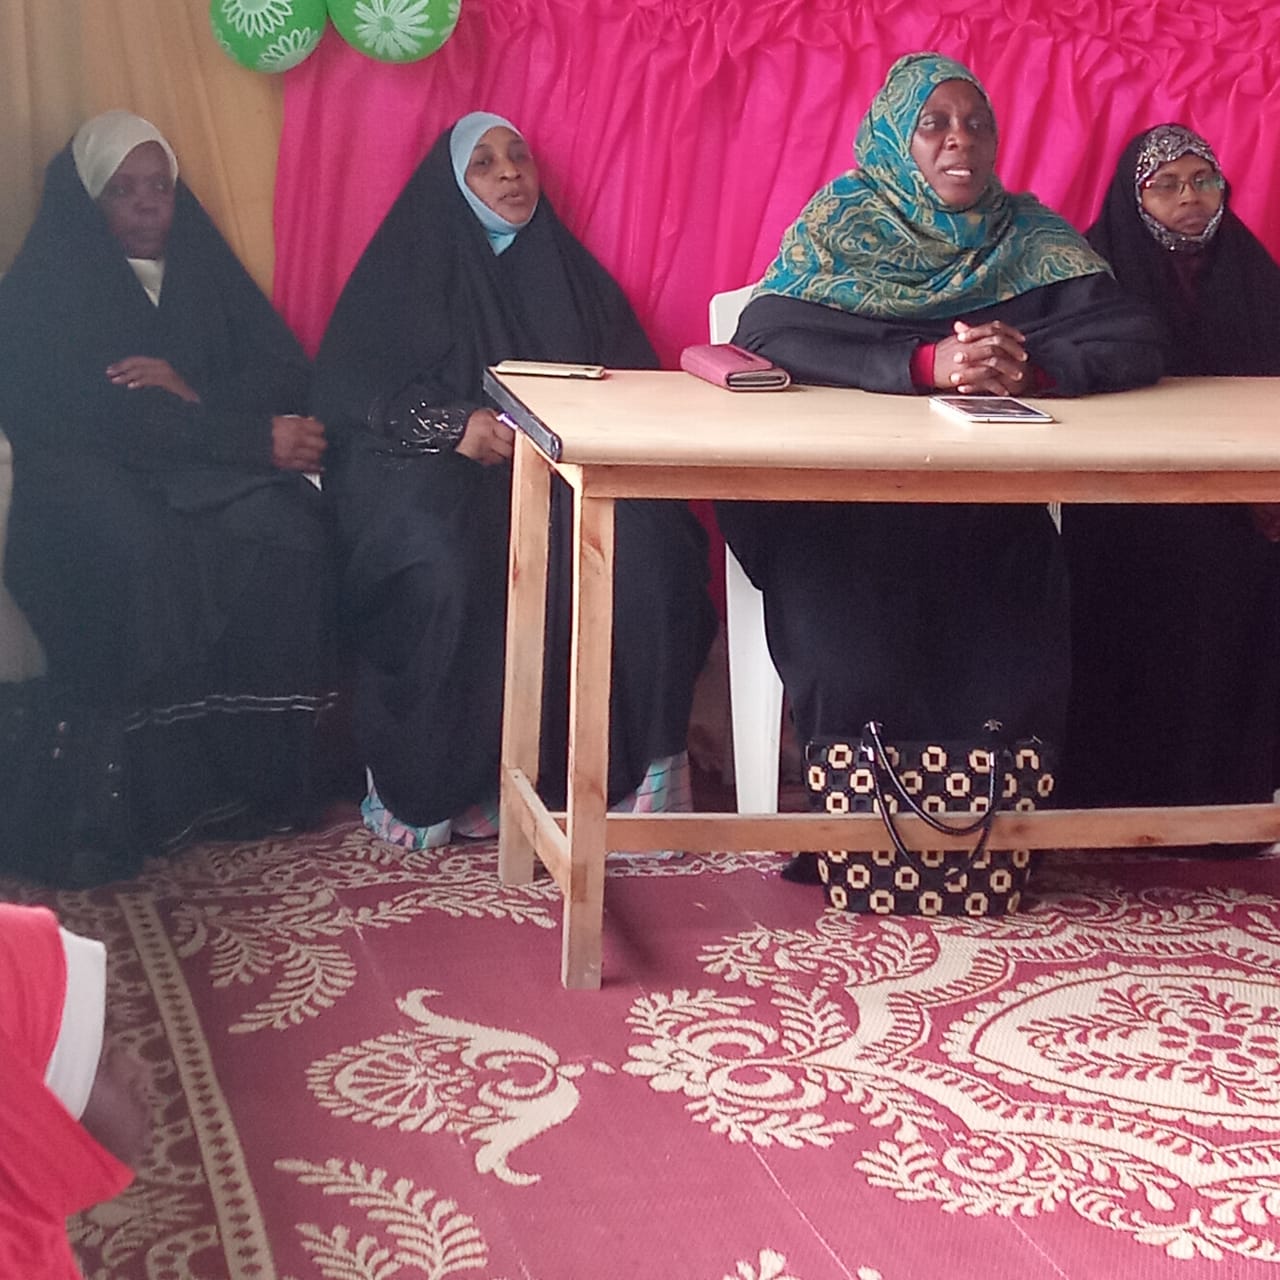 Majlis ya Mazazi ya Bibi Fatima Zahra SA, Mkuranga Tanzania